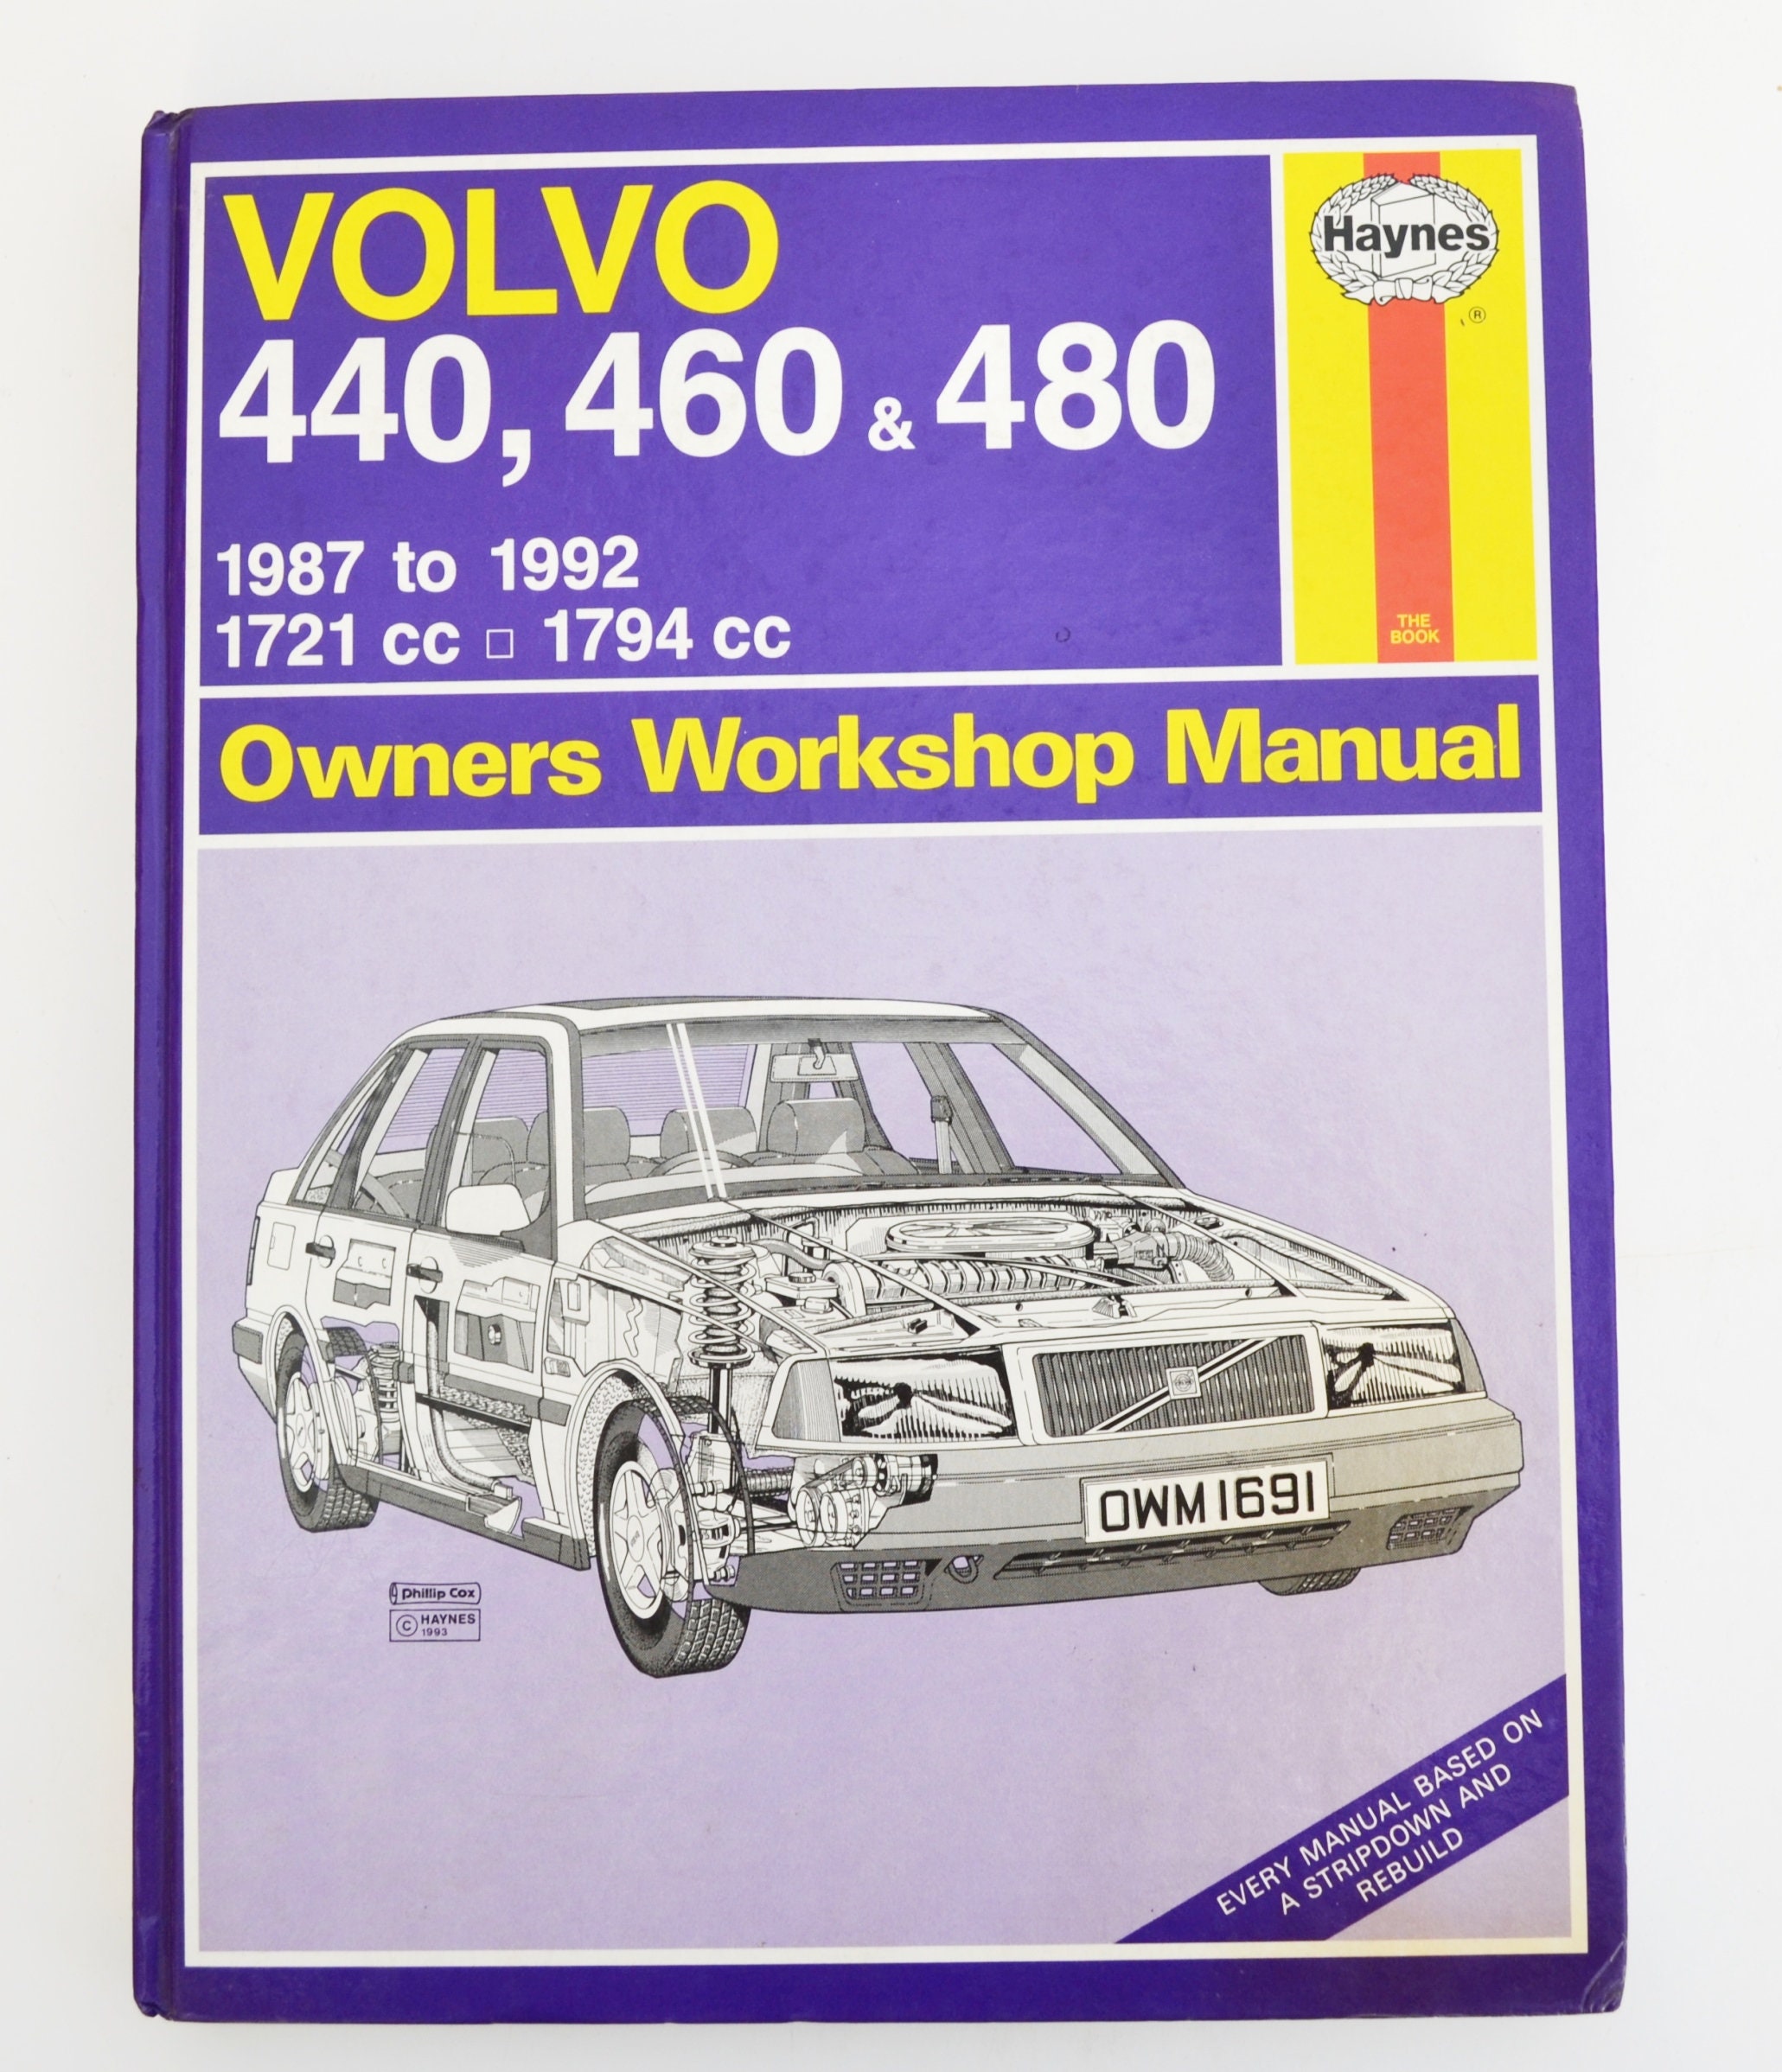 Haynes Volvo Owners Workshop Manual Volvo 440 Owners Manual | Etsy